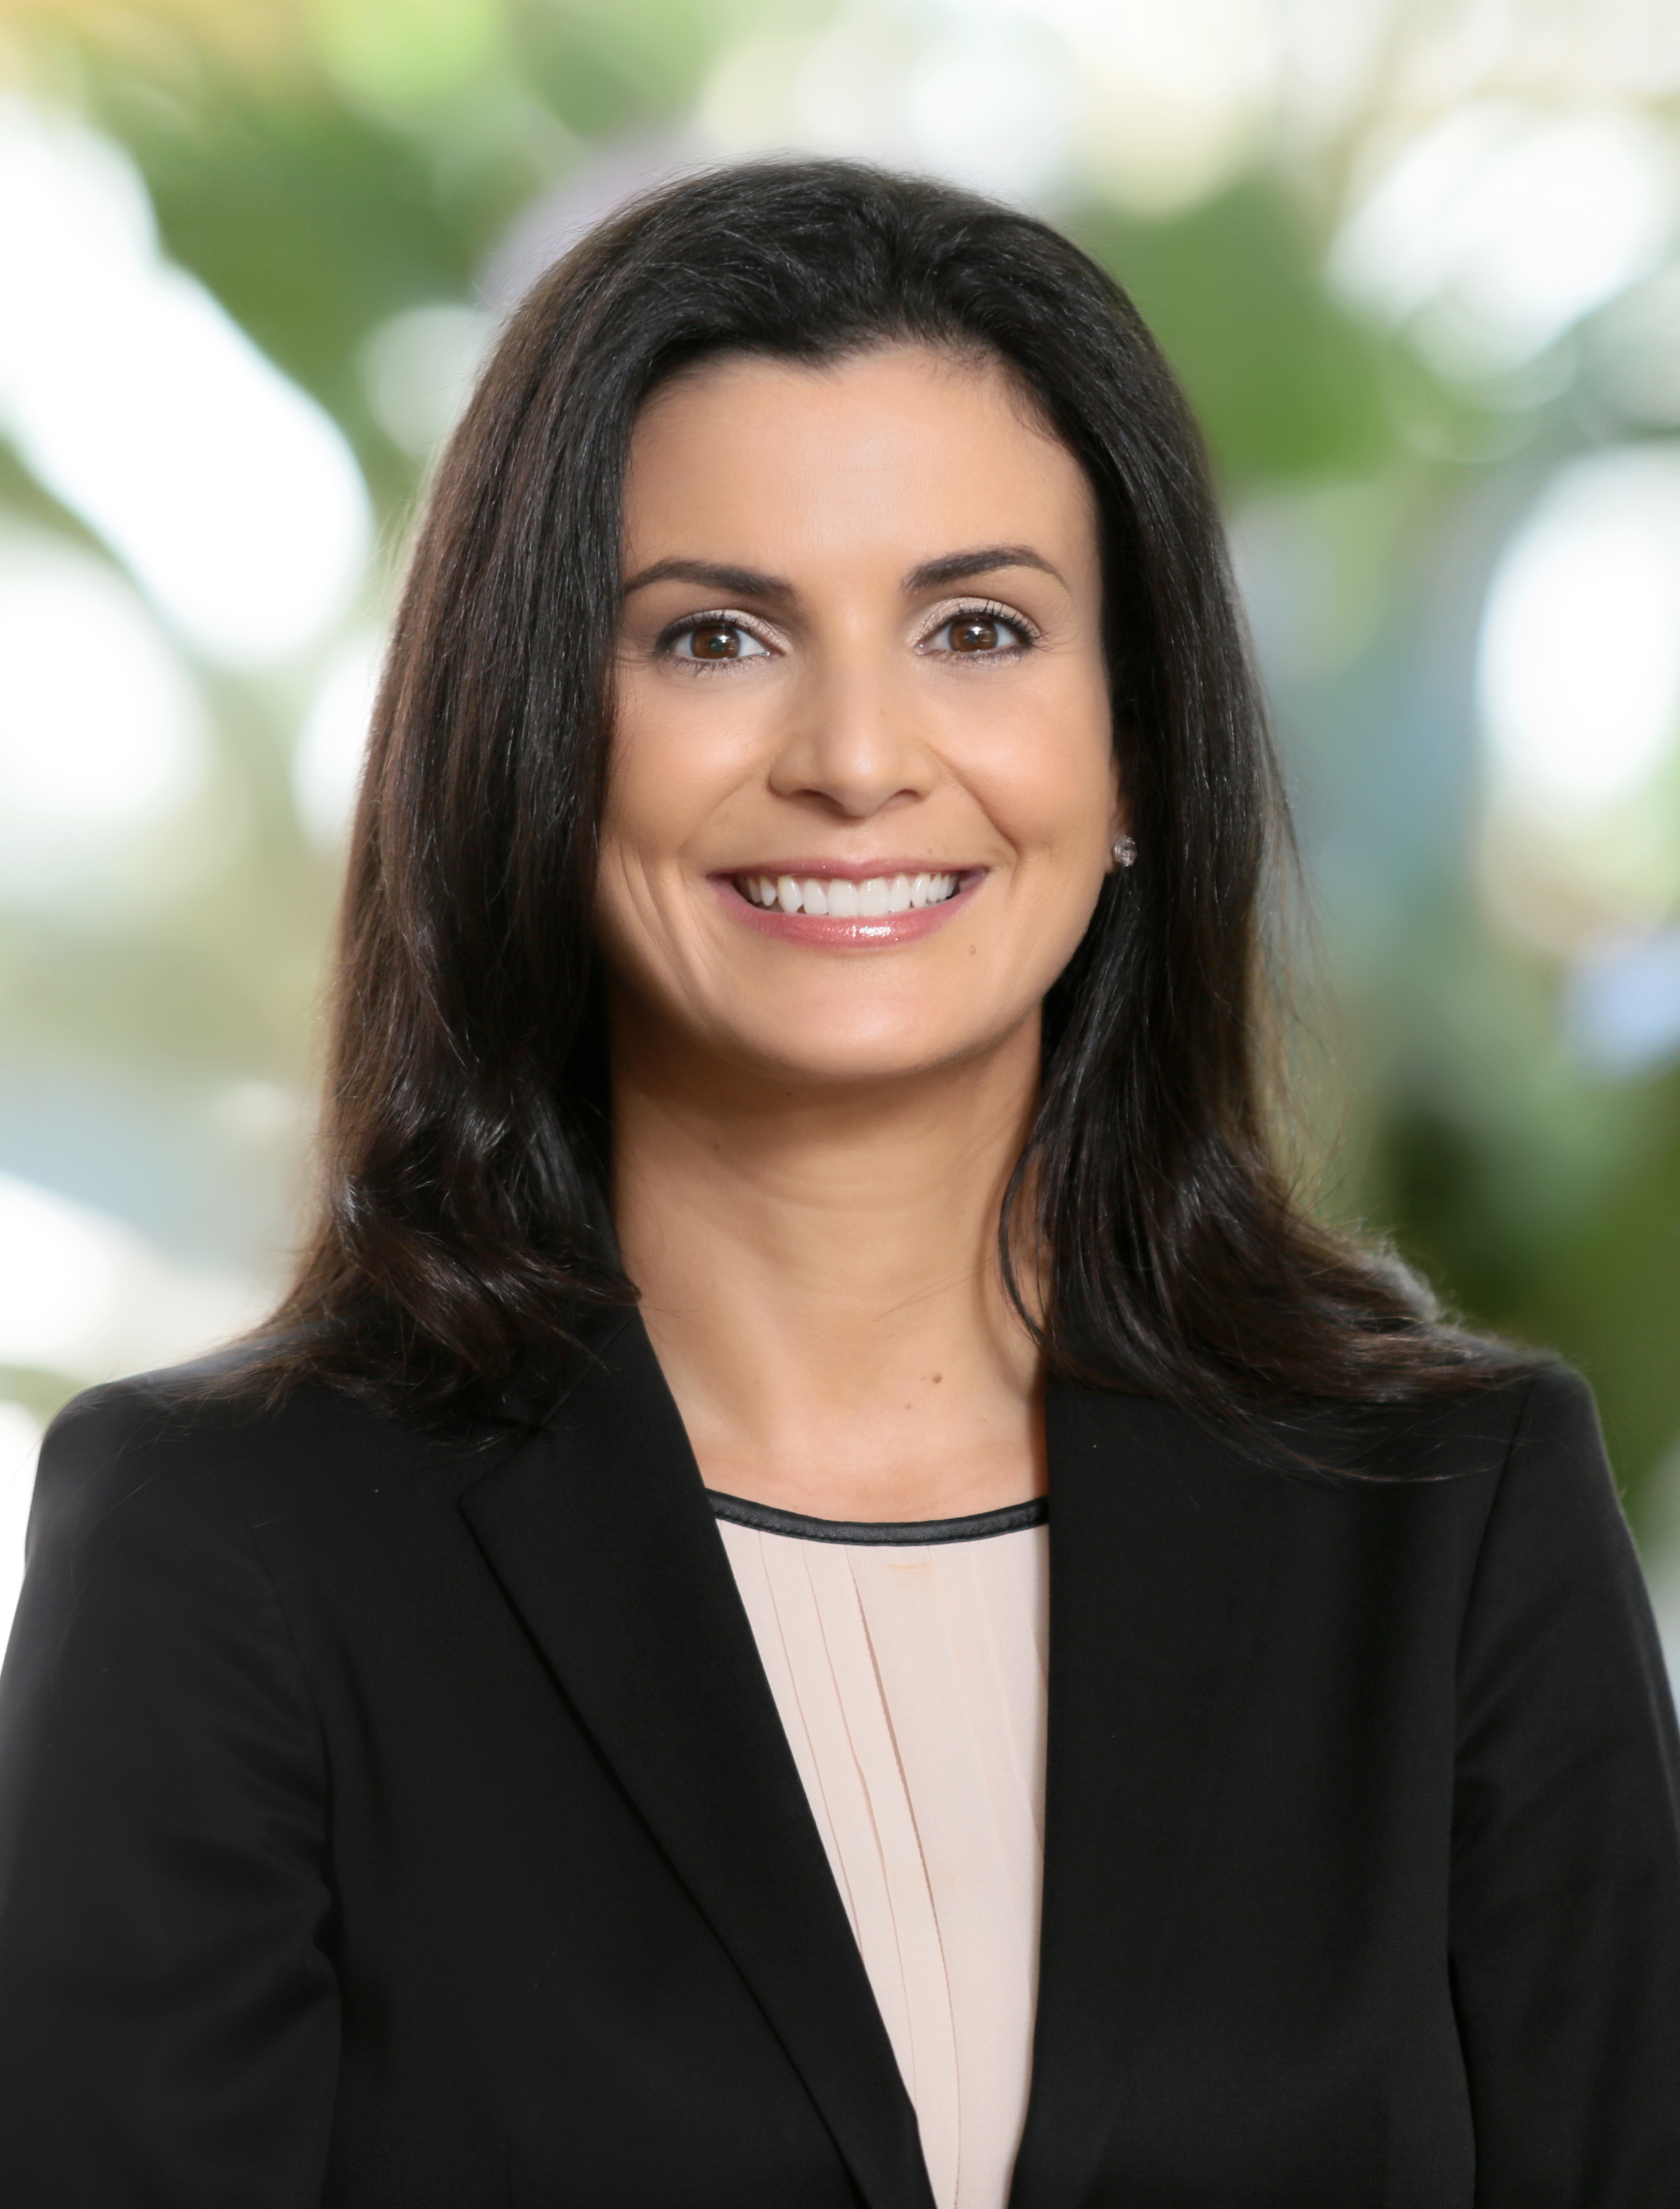 Patricia Abril, Professor, Business Law